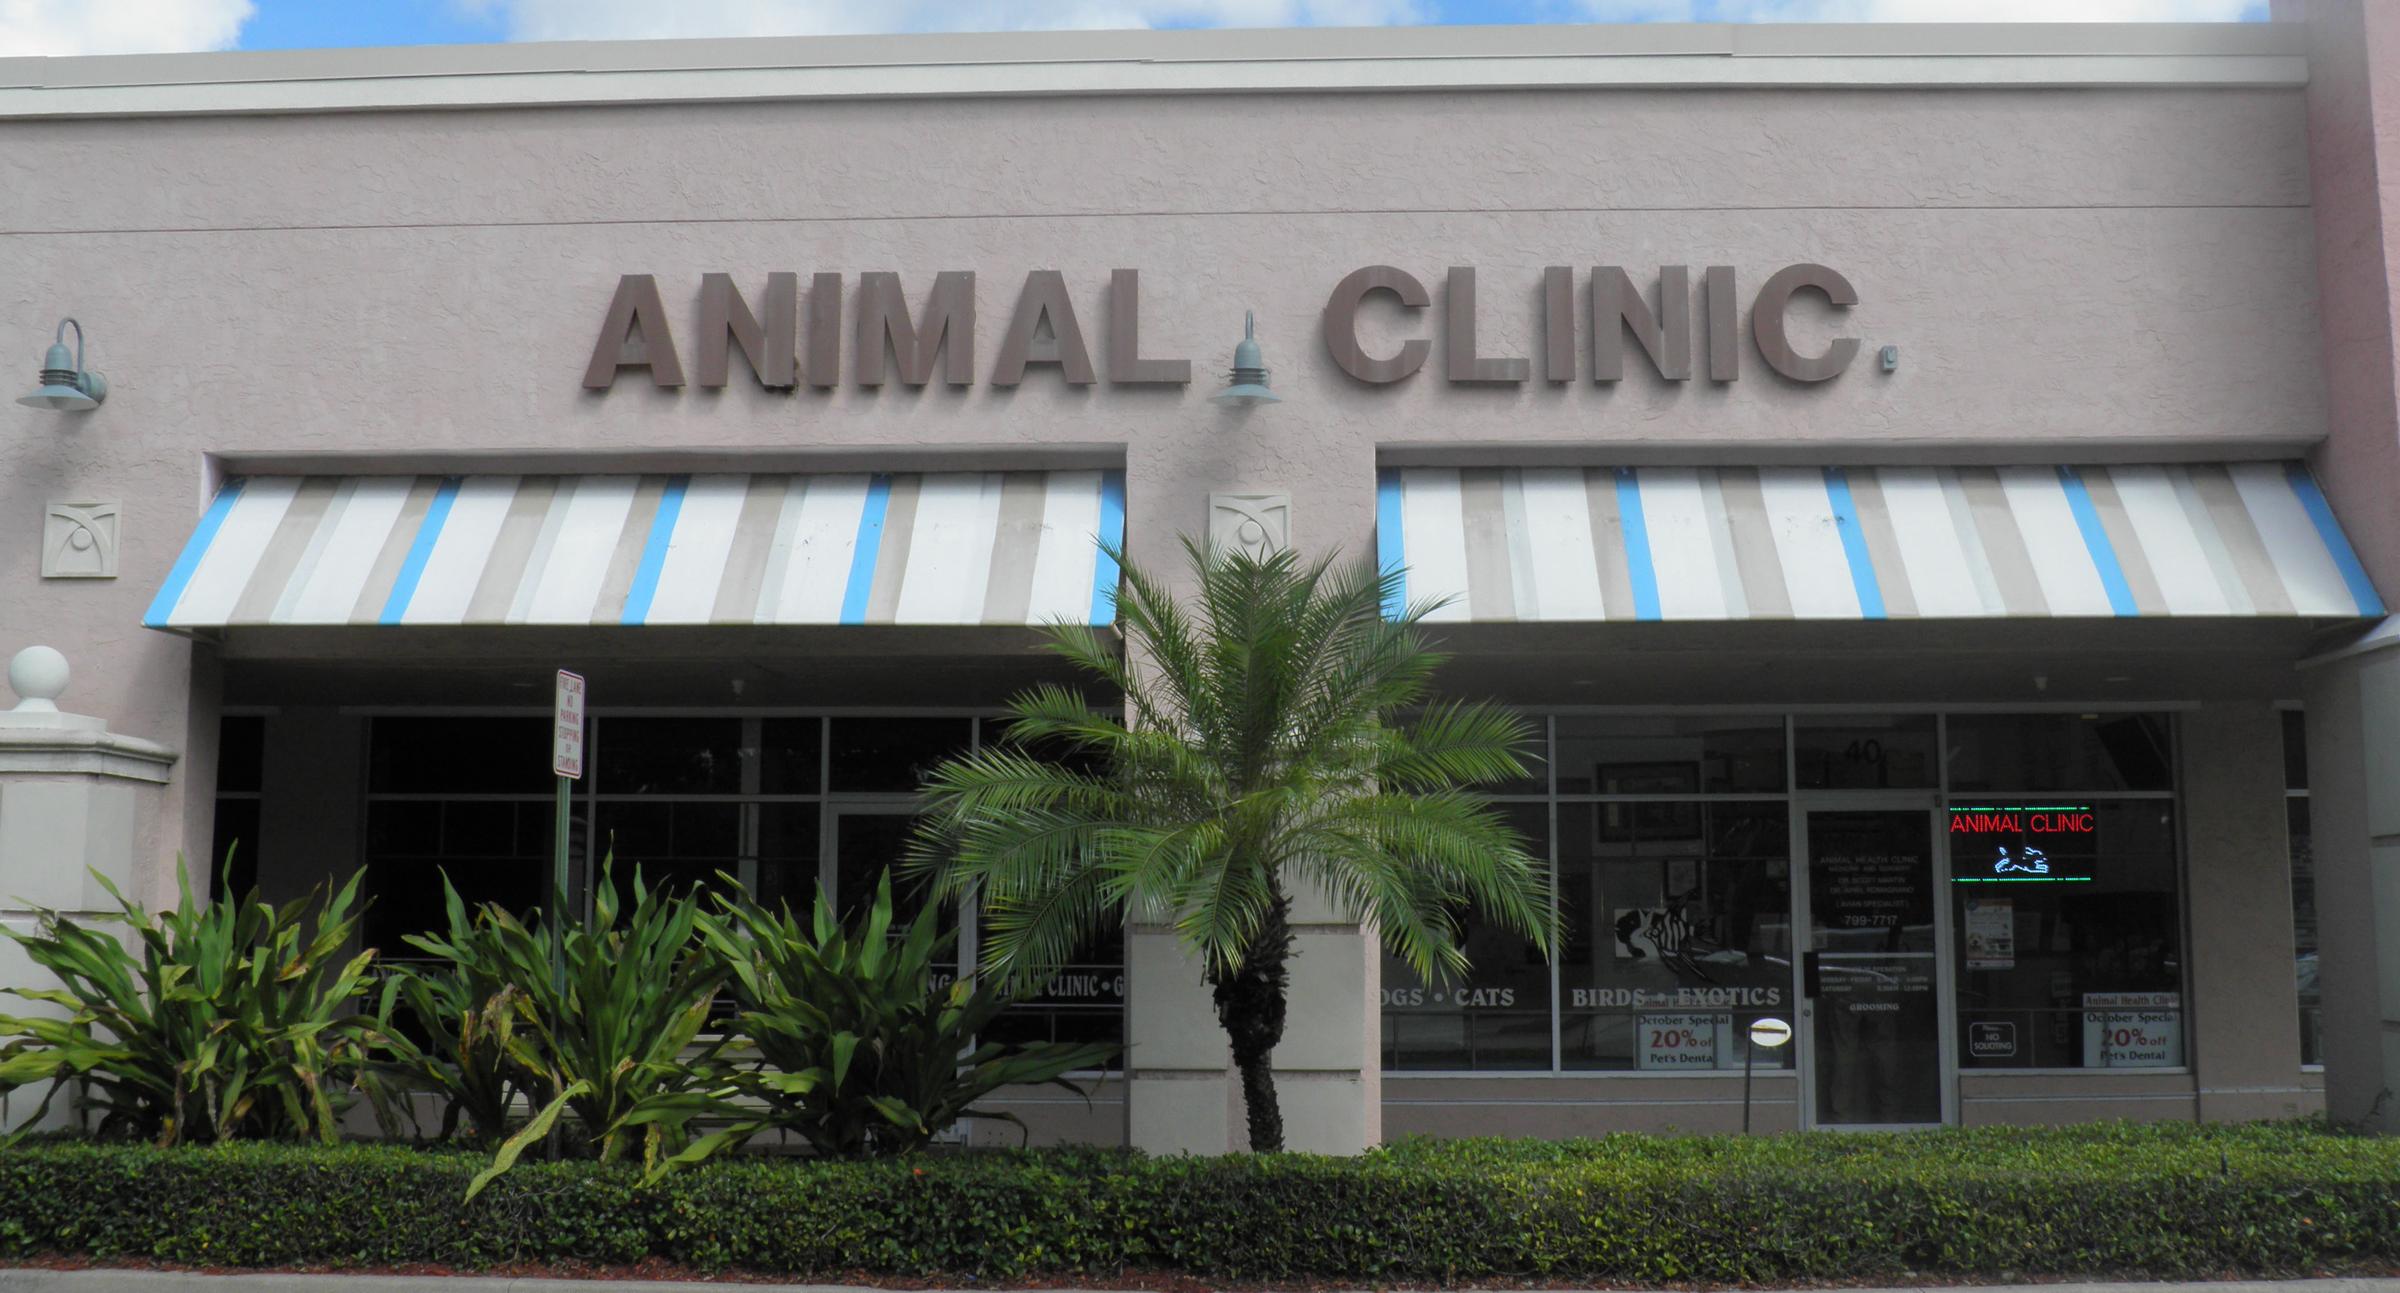 Directory of Veterinarians in Boca Raton, FL - BringFido